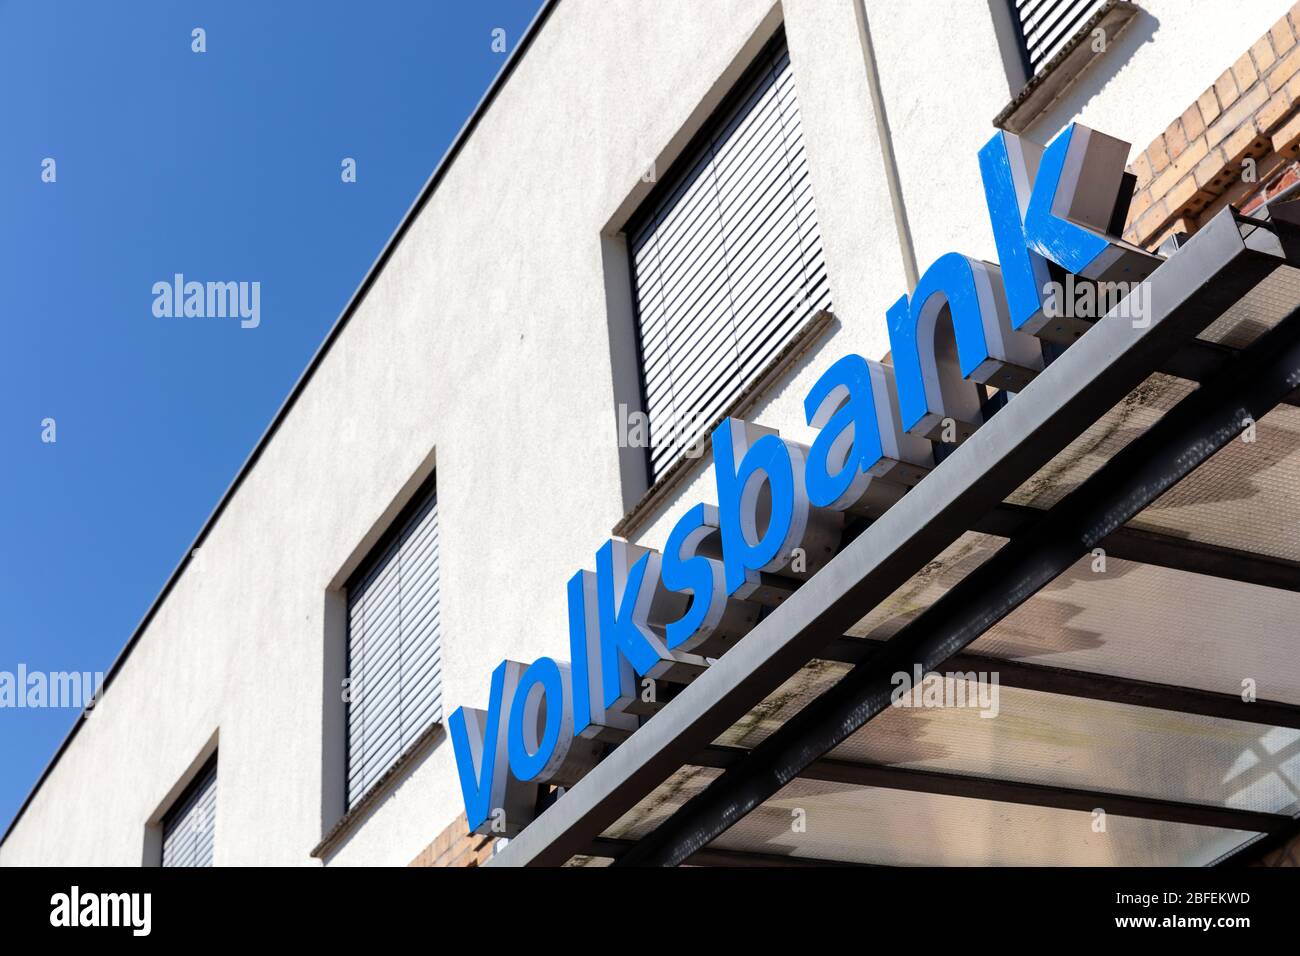 Filiale Volksbank. Volksbank è un marchio di banche cooperative in Germania. Foto Stock